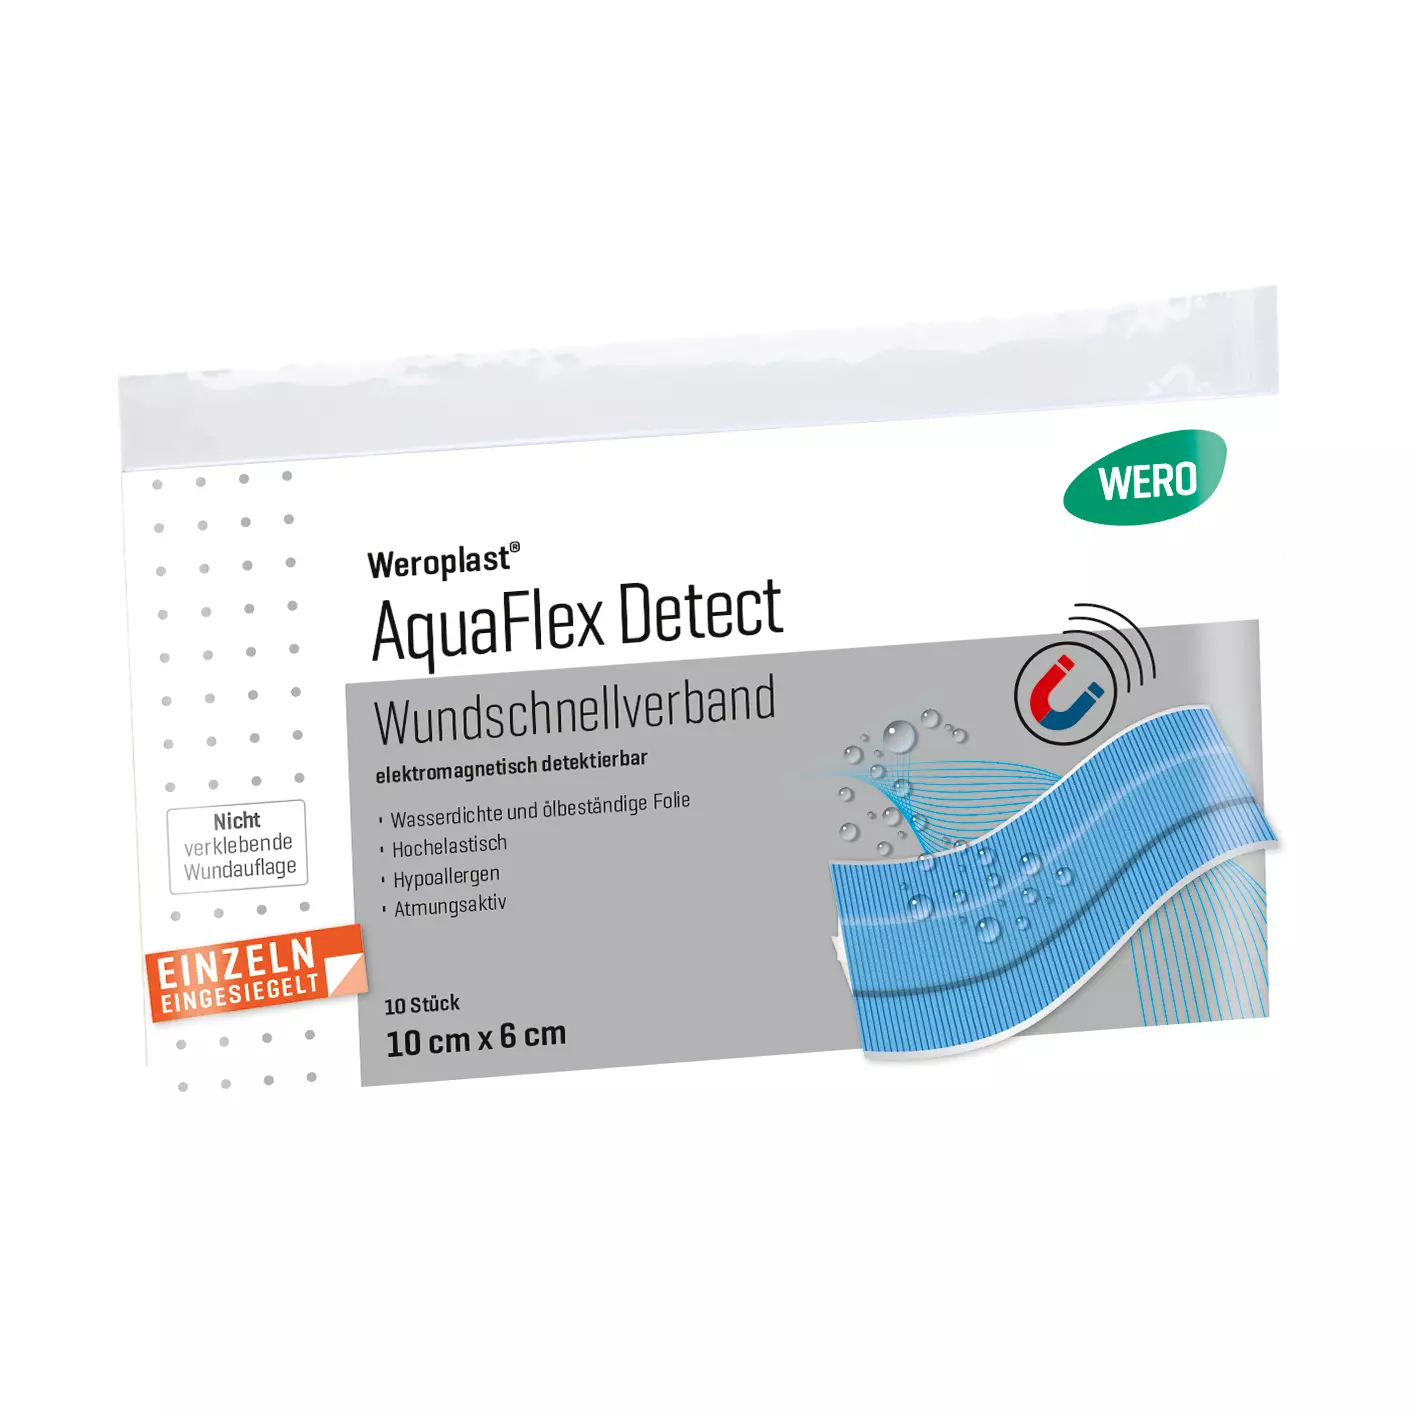 Weroplast® AquaFlex Detect Wundschnellverband - 6 cm, 10 cm